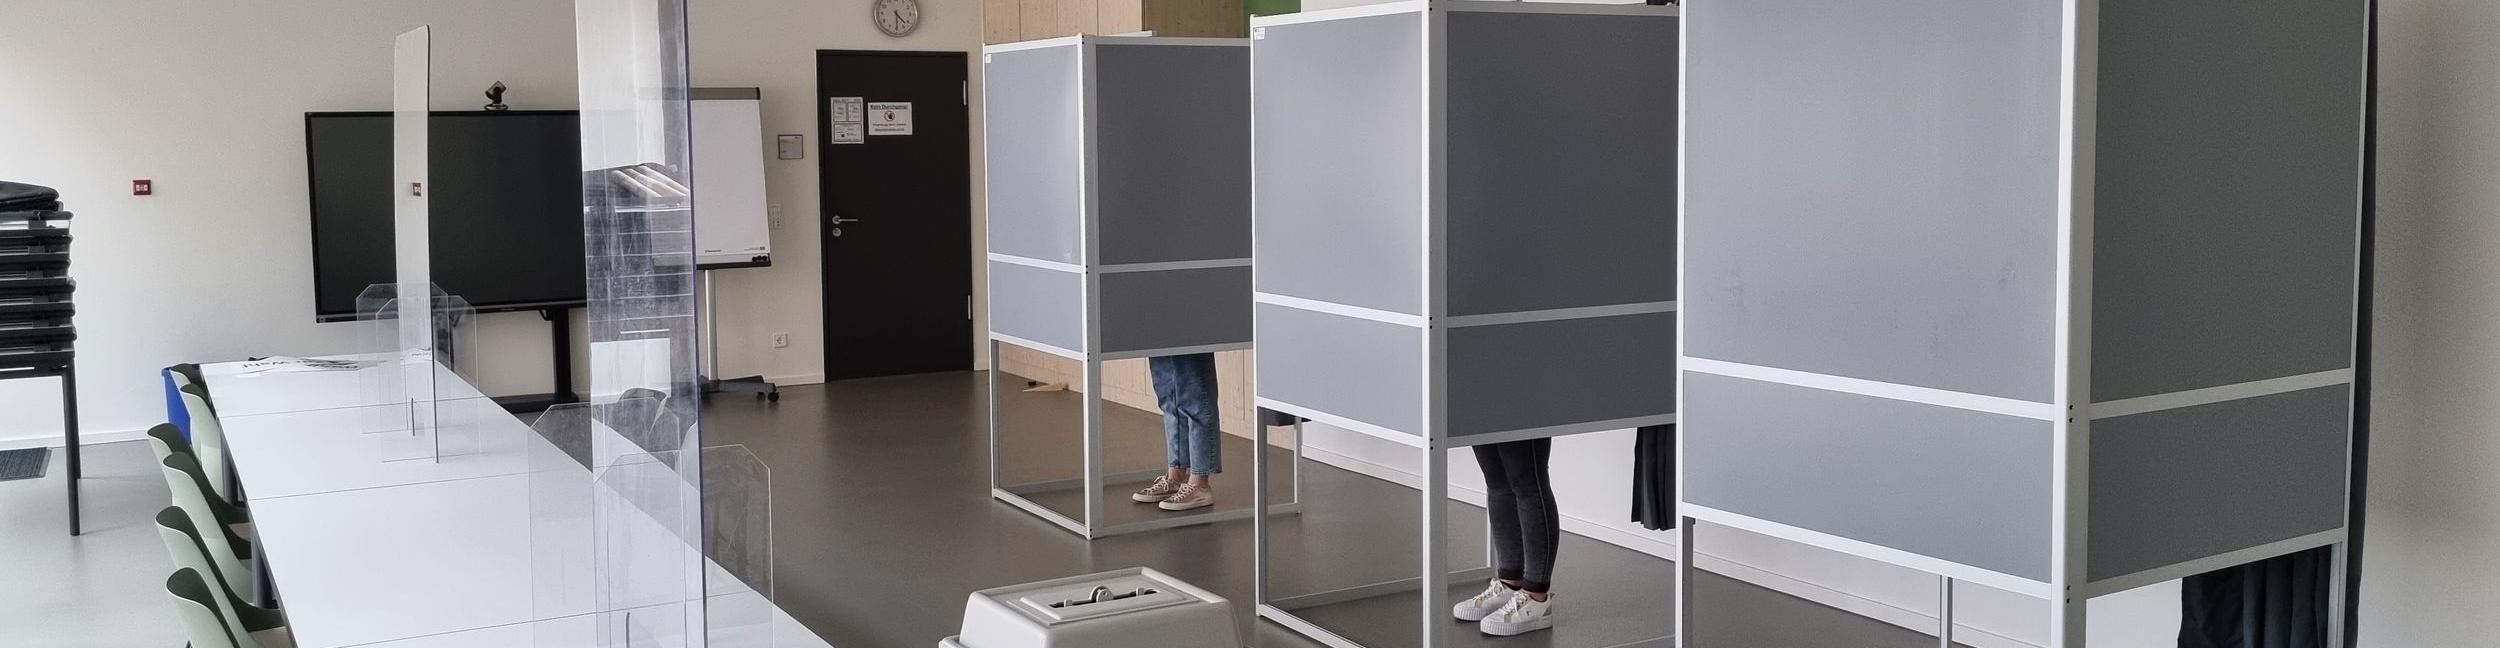 Bureau de vote dans les services techniques de la Plittersdorfer Strasse